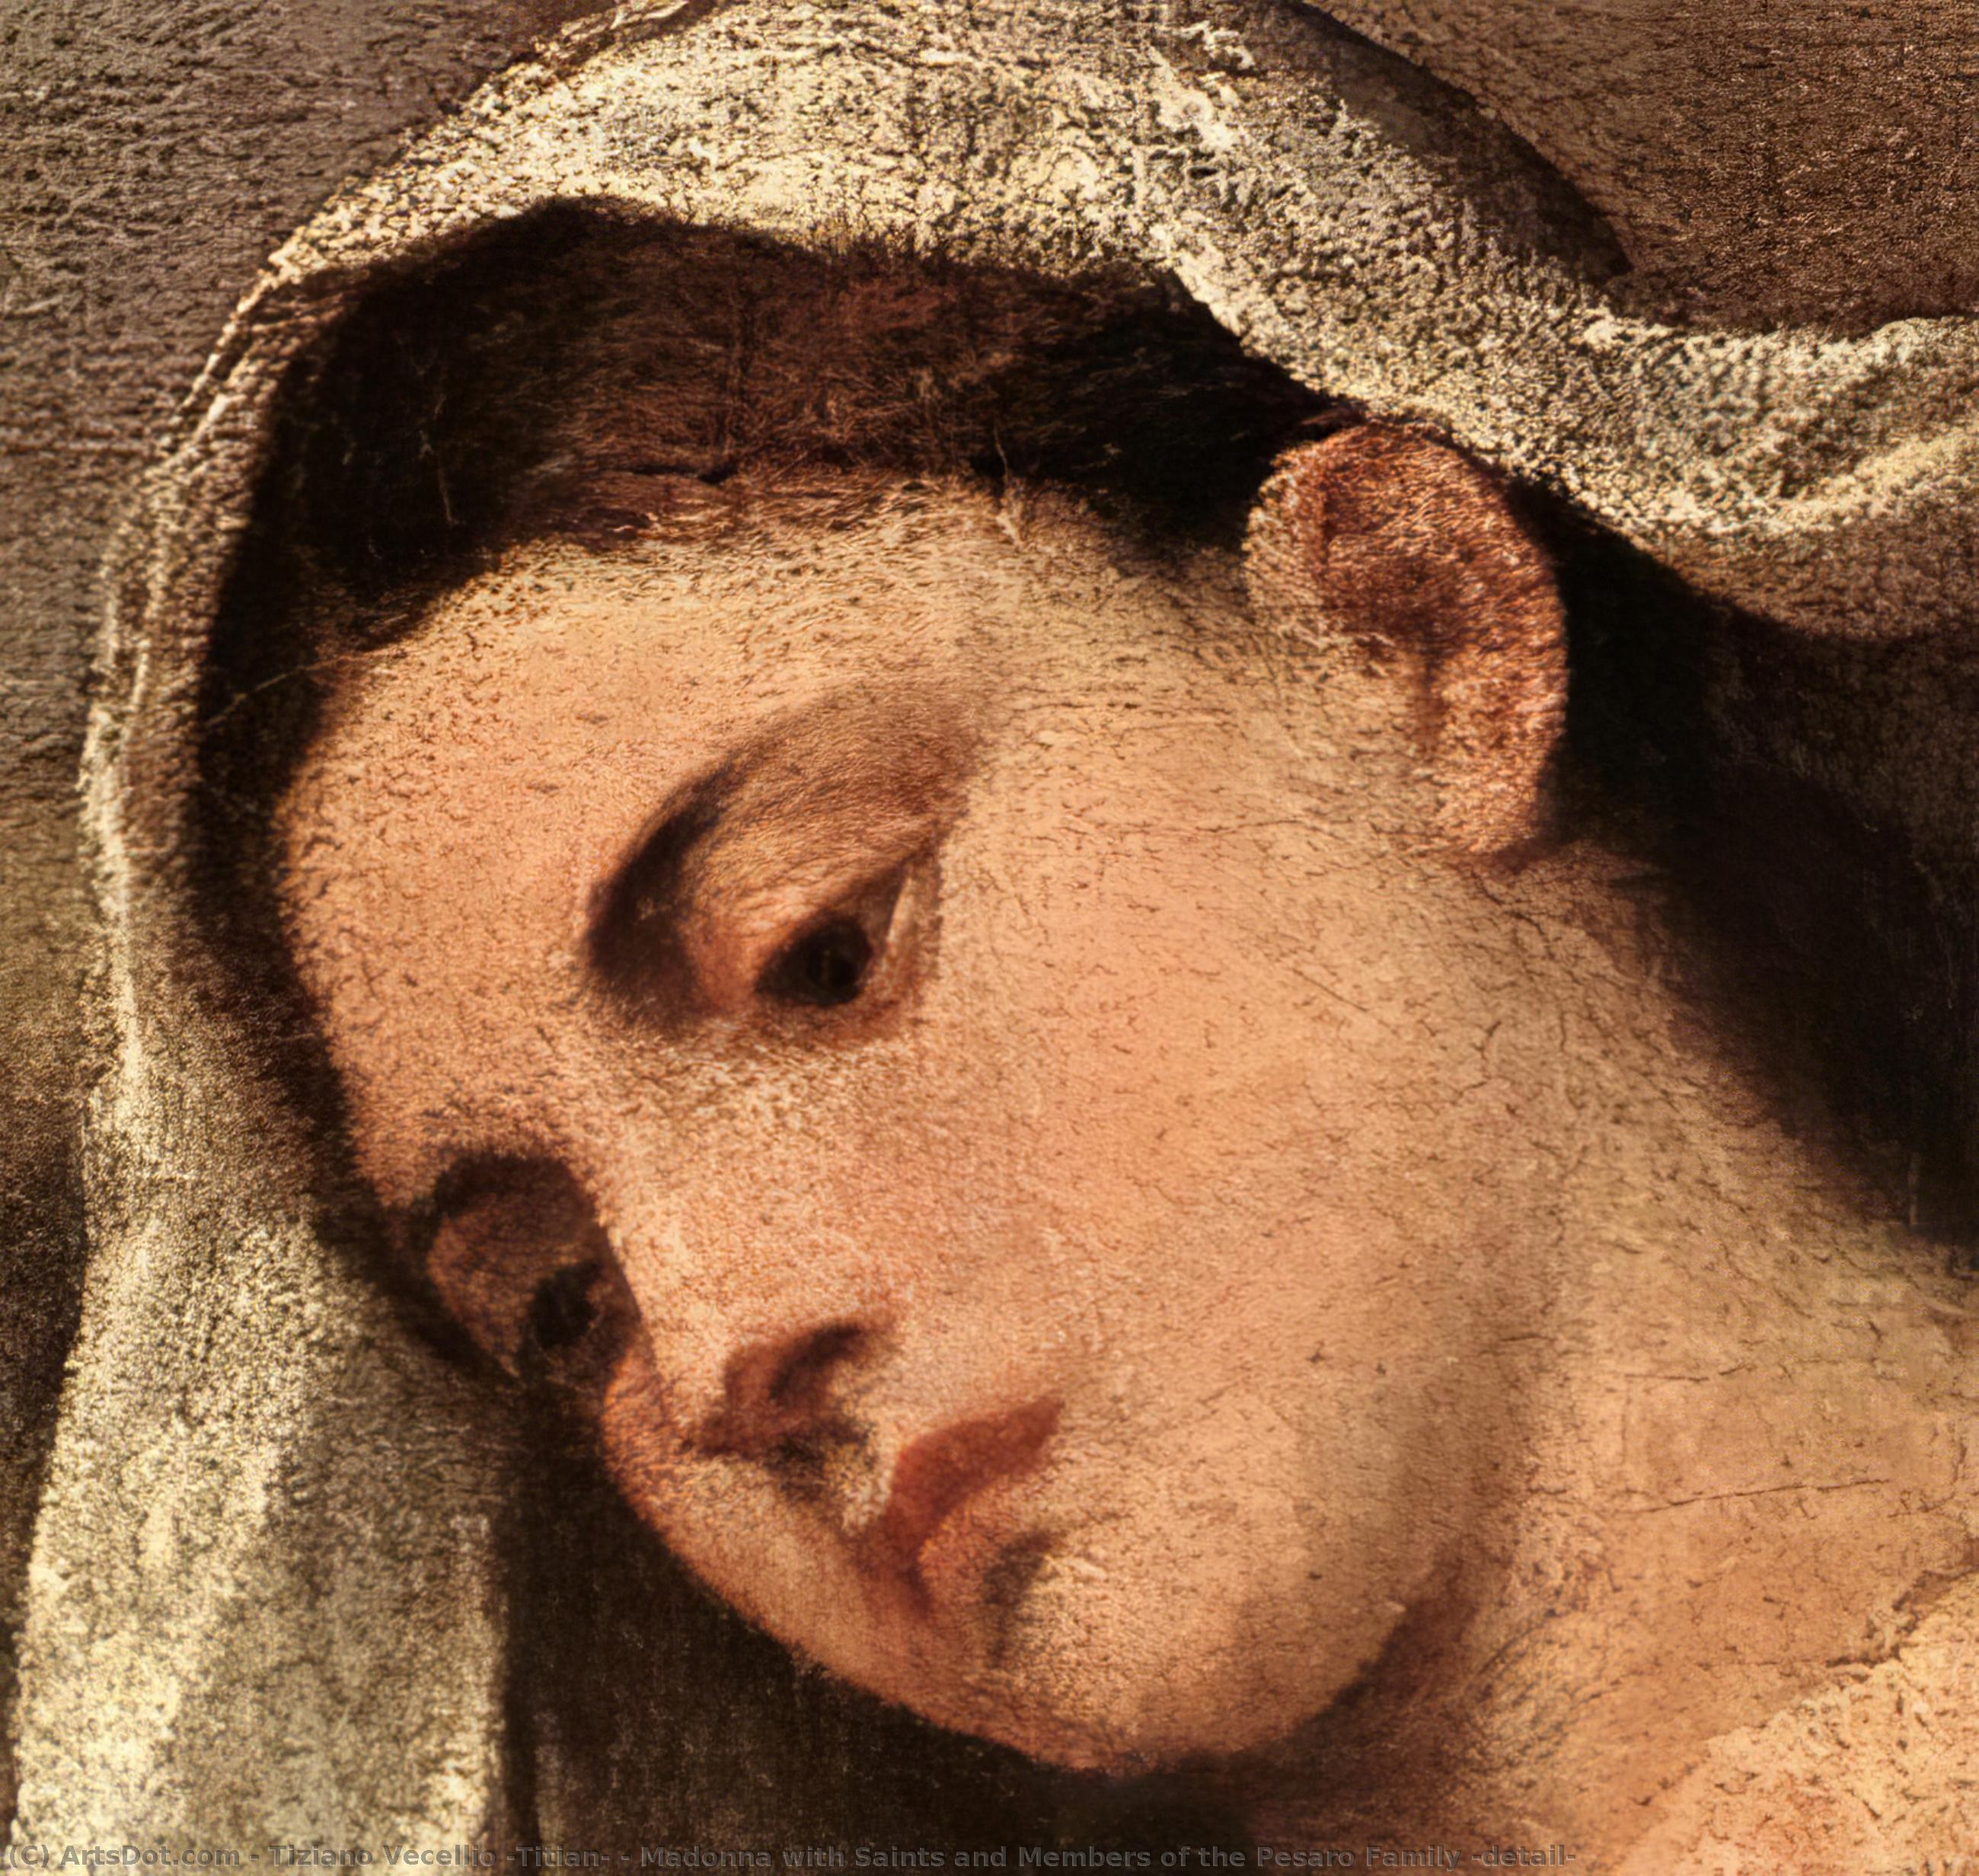 Compra Riproduzioni D'arte Del Museo Madonna con Santi e Membri della Famiglia Pesaro (particolare), 1519 di Tiziano Vecellio (Titian) (1490-1576, Italy) | ArtsDot.com